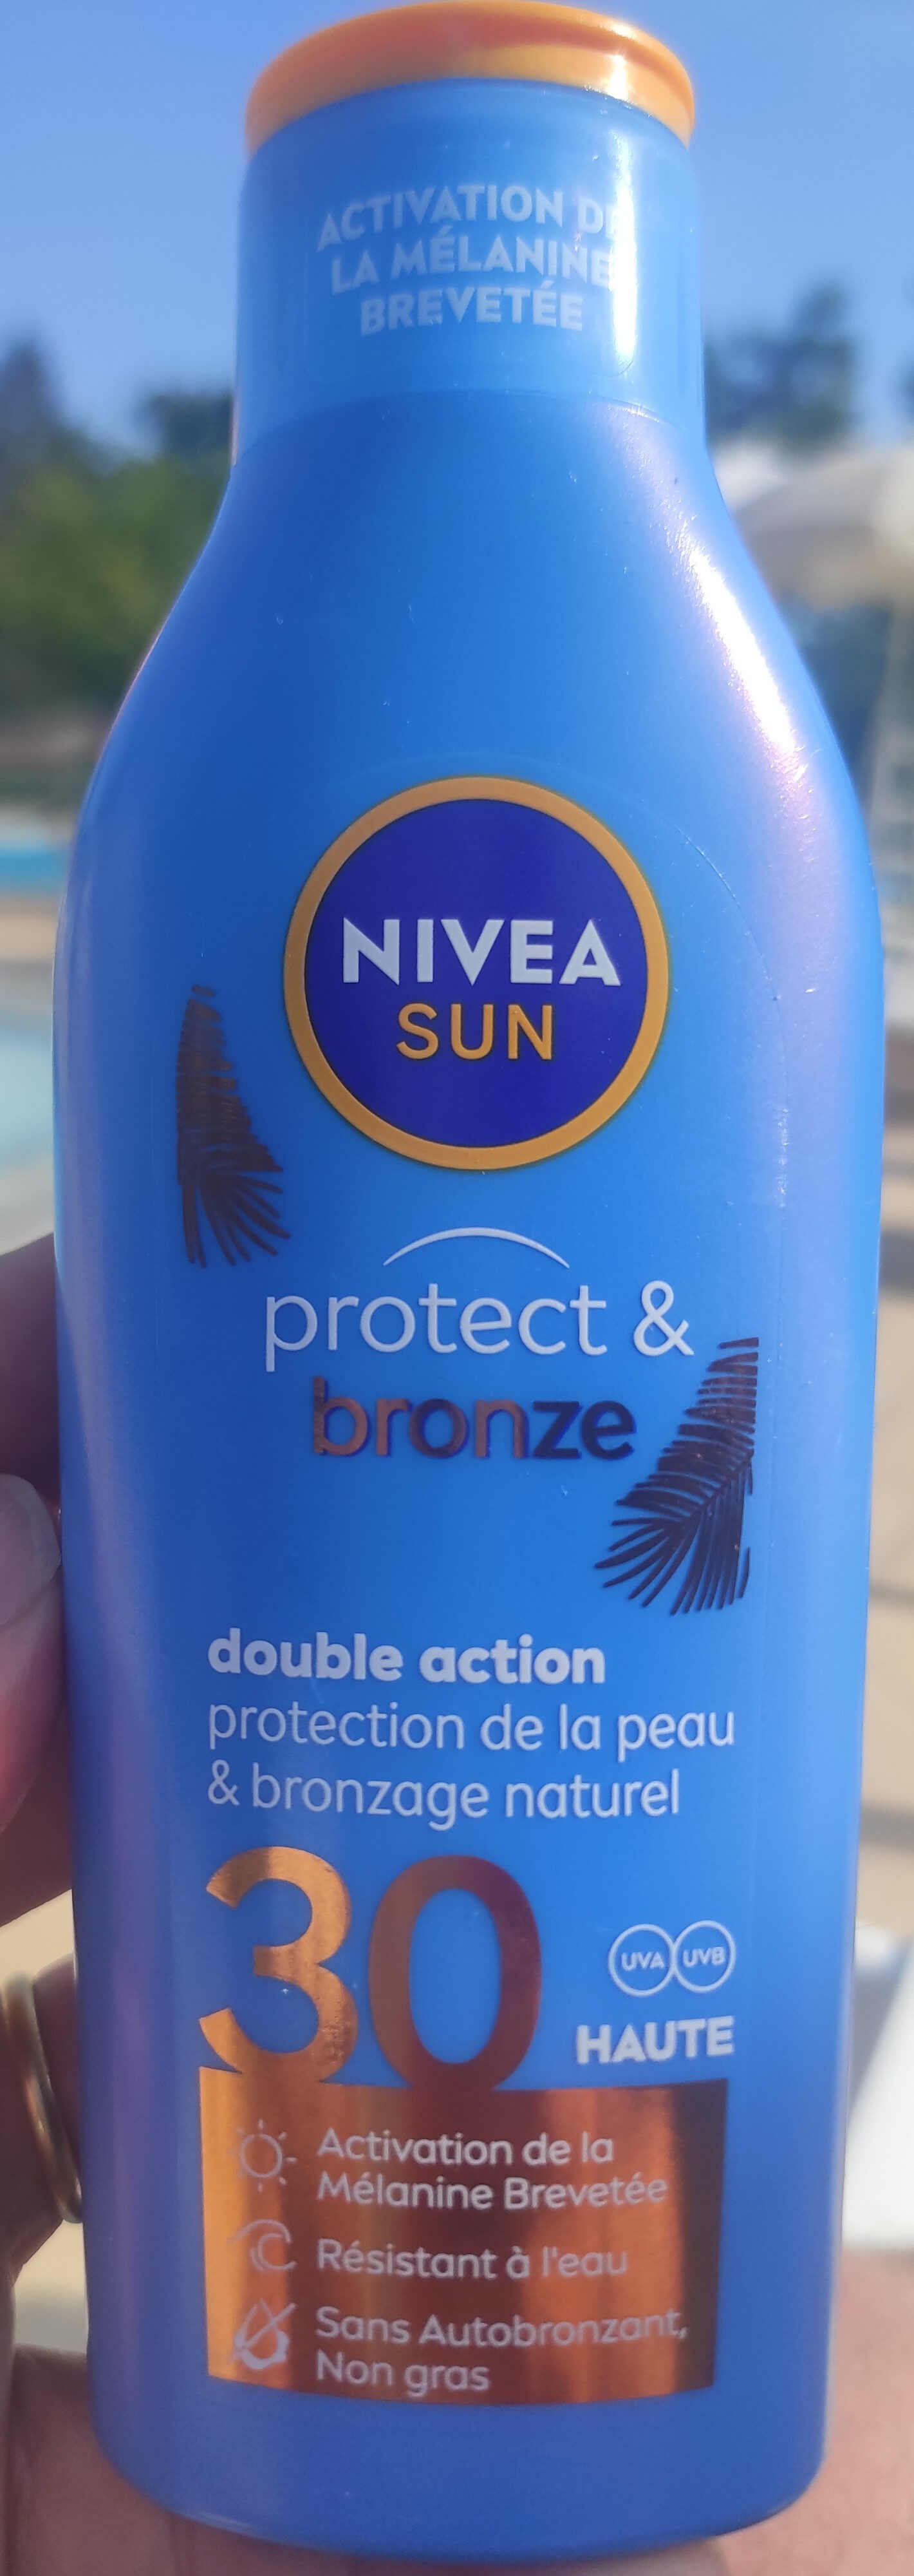 Nivea Sun protect & bronze - Tuote - fr